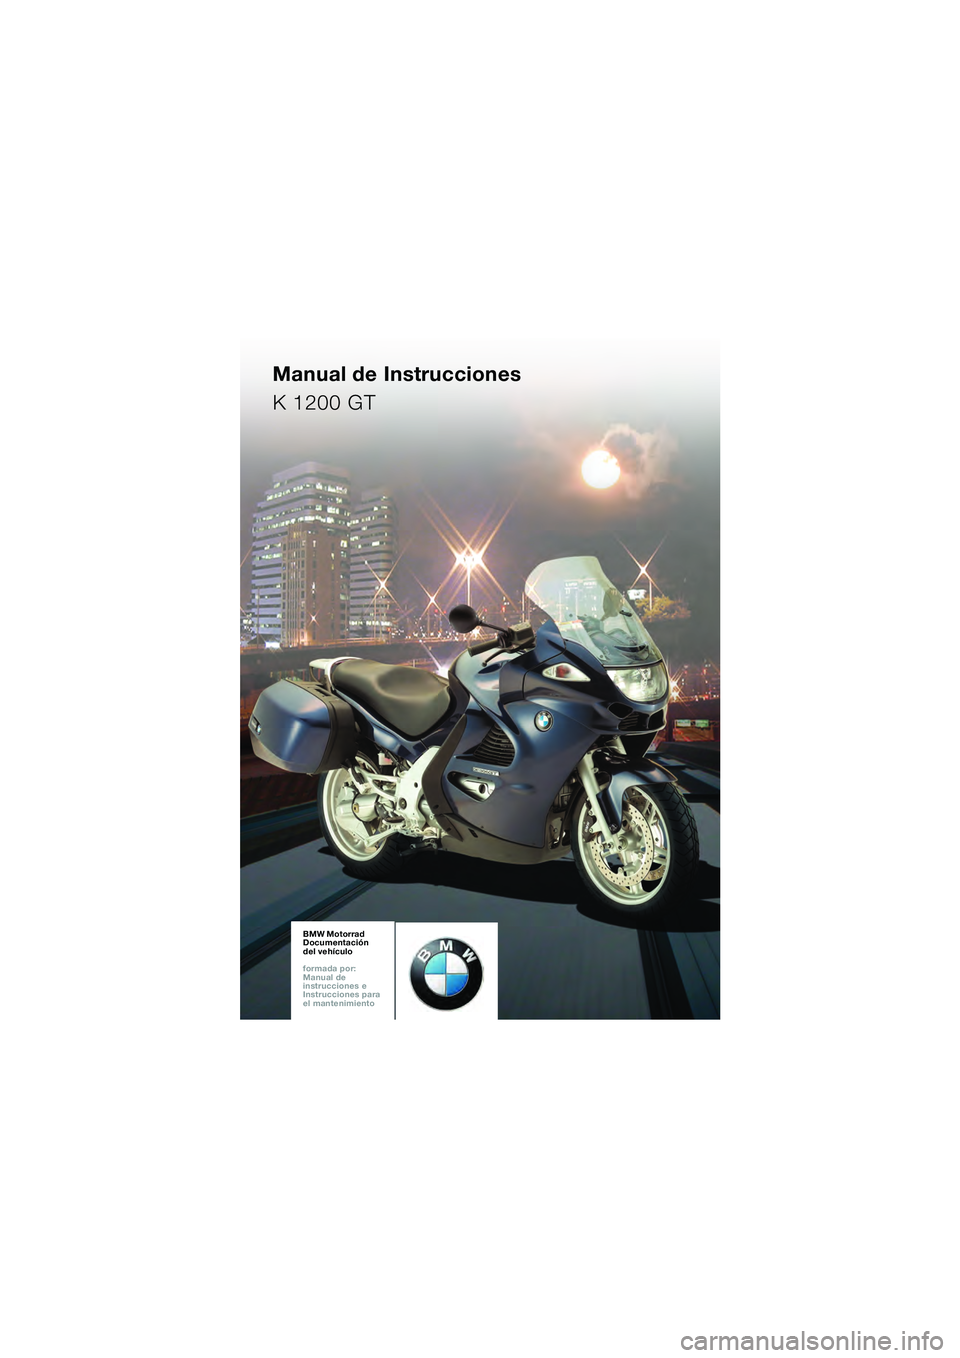 BMW MOTORRAD K 1200 GT 2002  Manual de instrucciones (in Spanish) BMW Motorrad
Documentación  
del vehículo
formada por:  
Manual de  
instrucciones e  
Instrucciones para  
el mantenimientoBMW Motorrad
Documentación  
del vehículo
formada por:  
Manual de  
ins